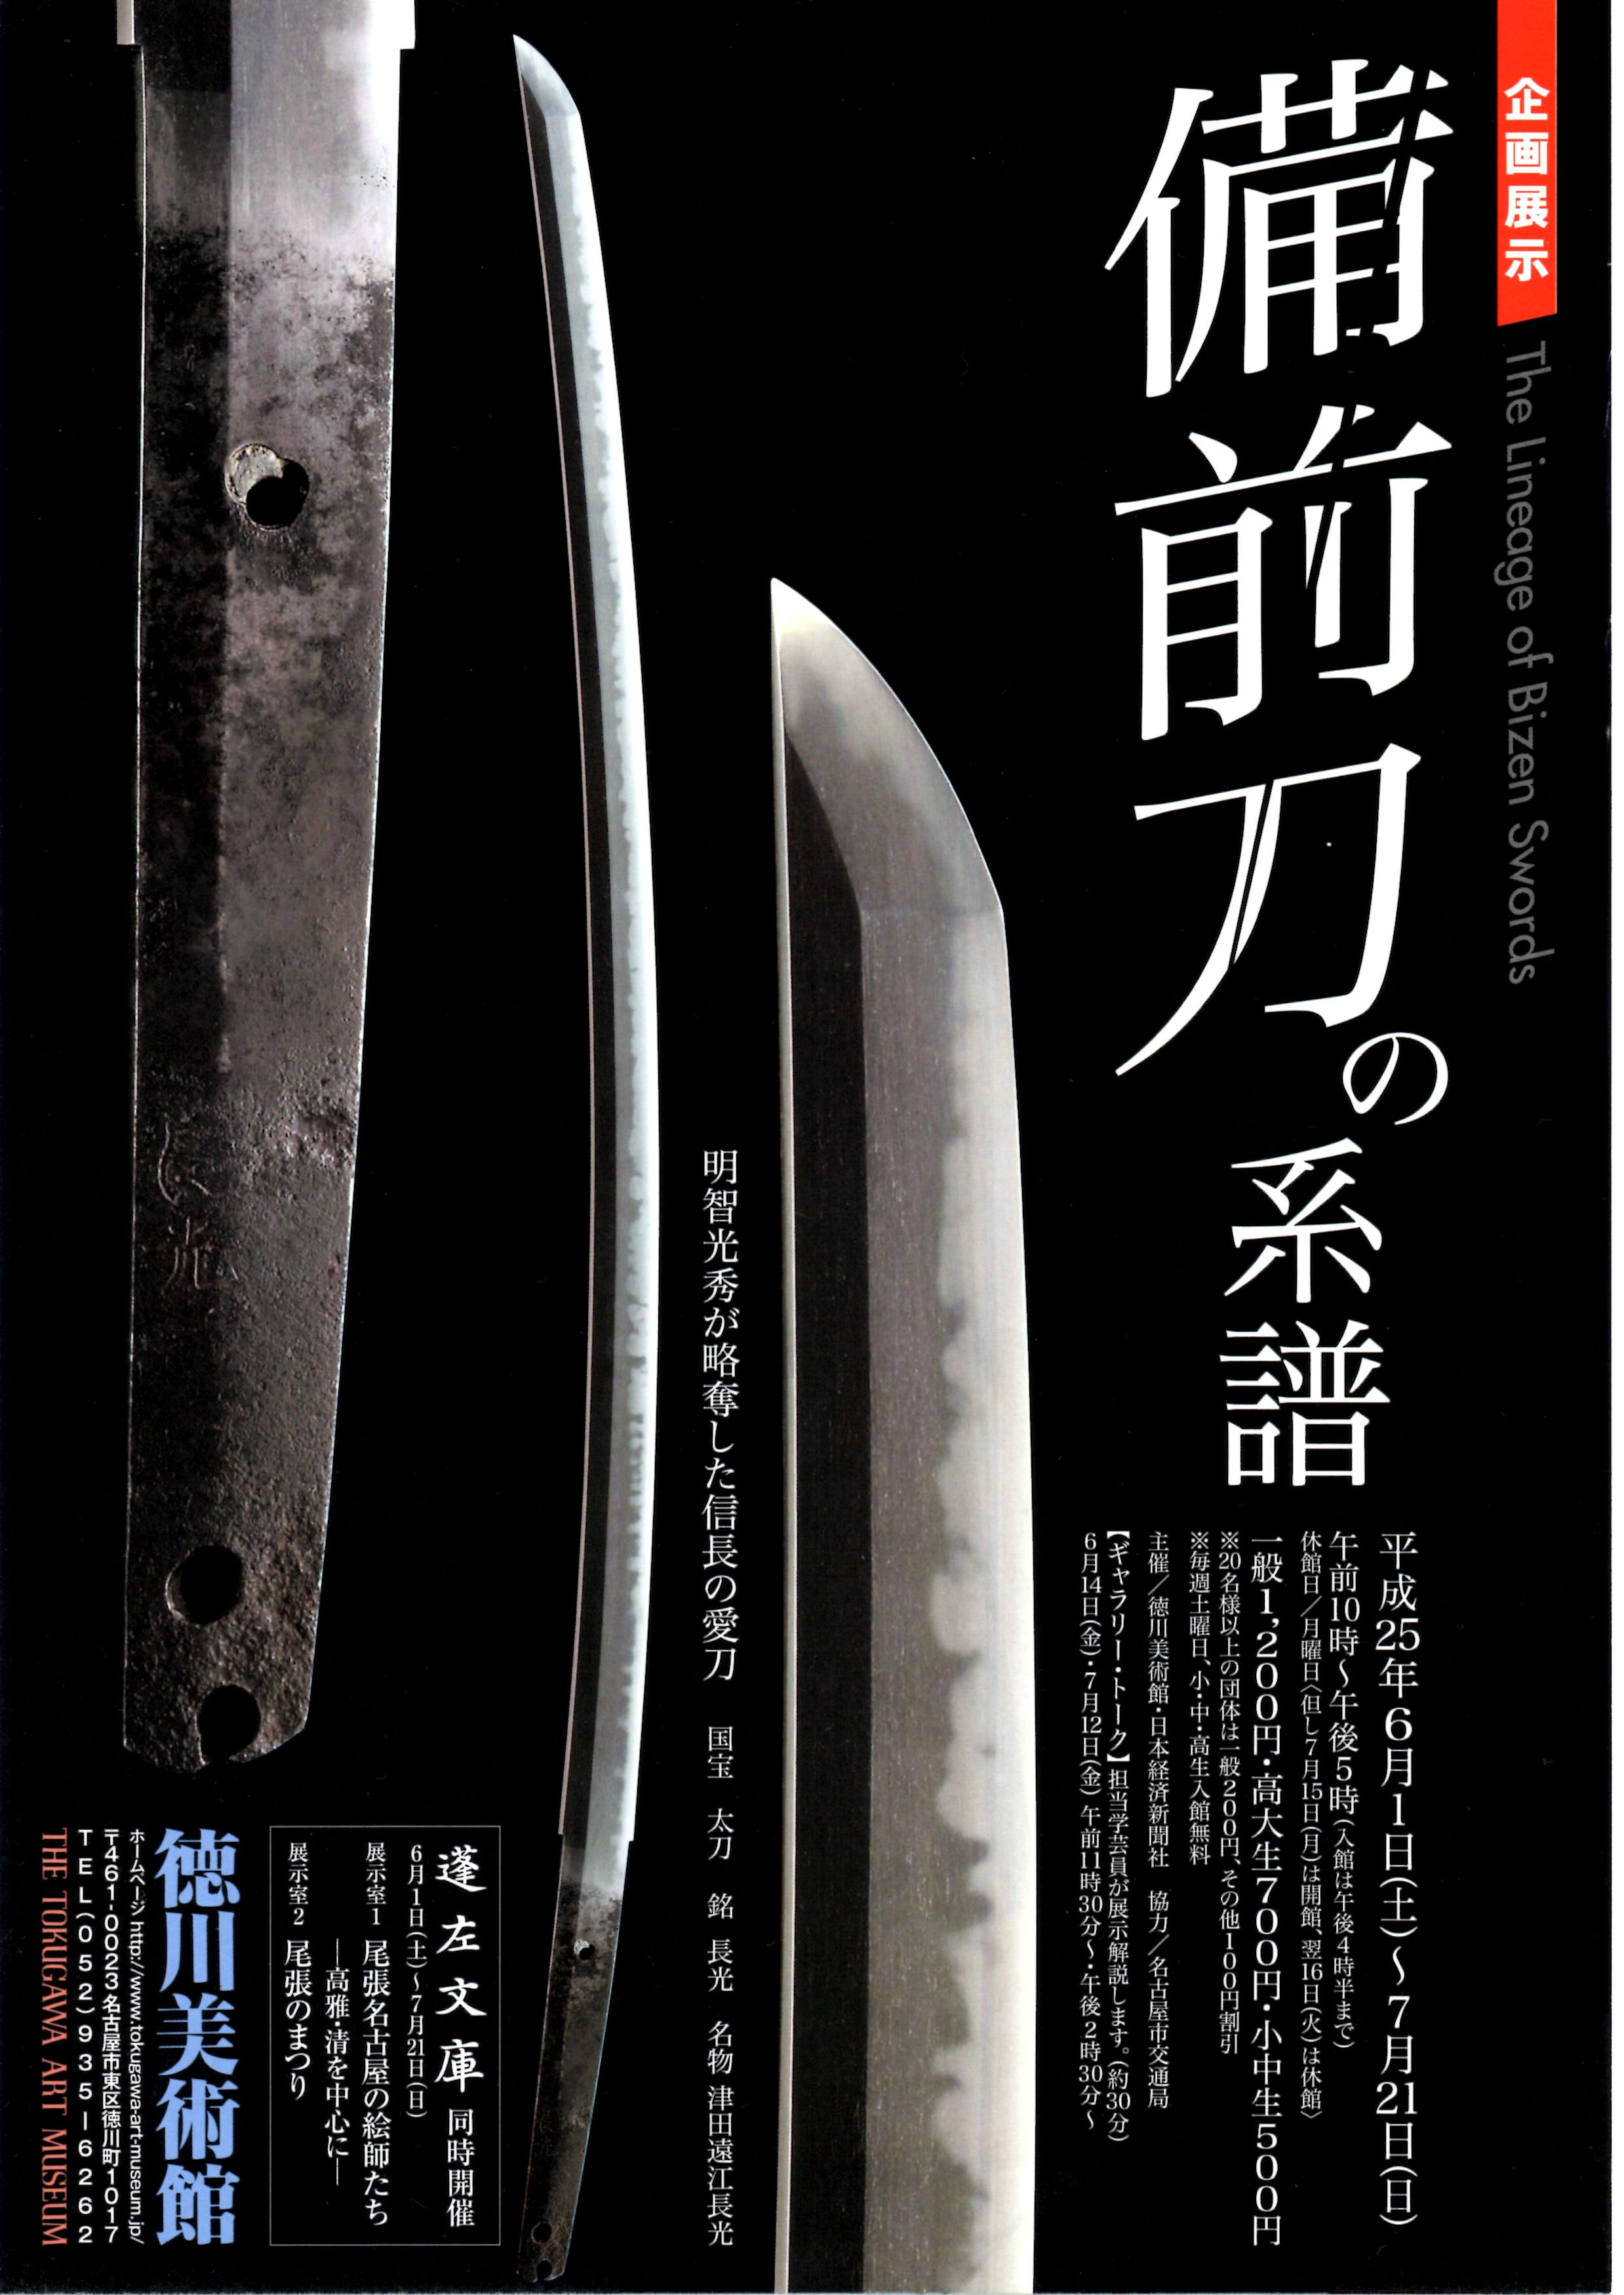 企画展「備前刀の系譜」 | 悠樂菴倶楽部 日本刀の世界